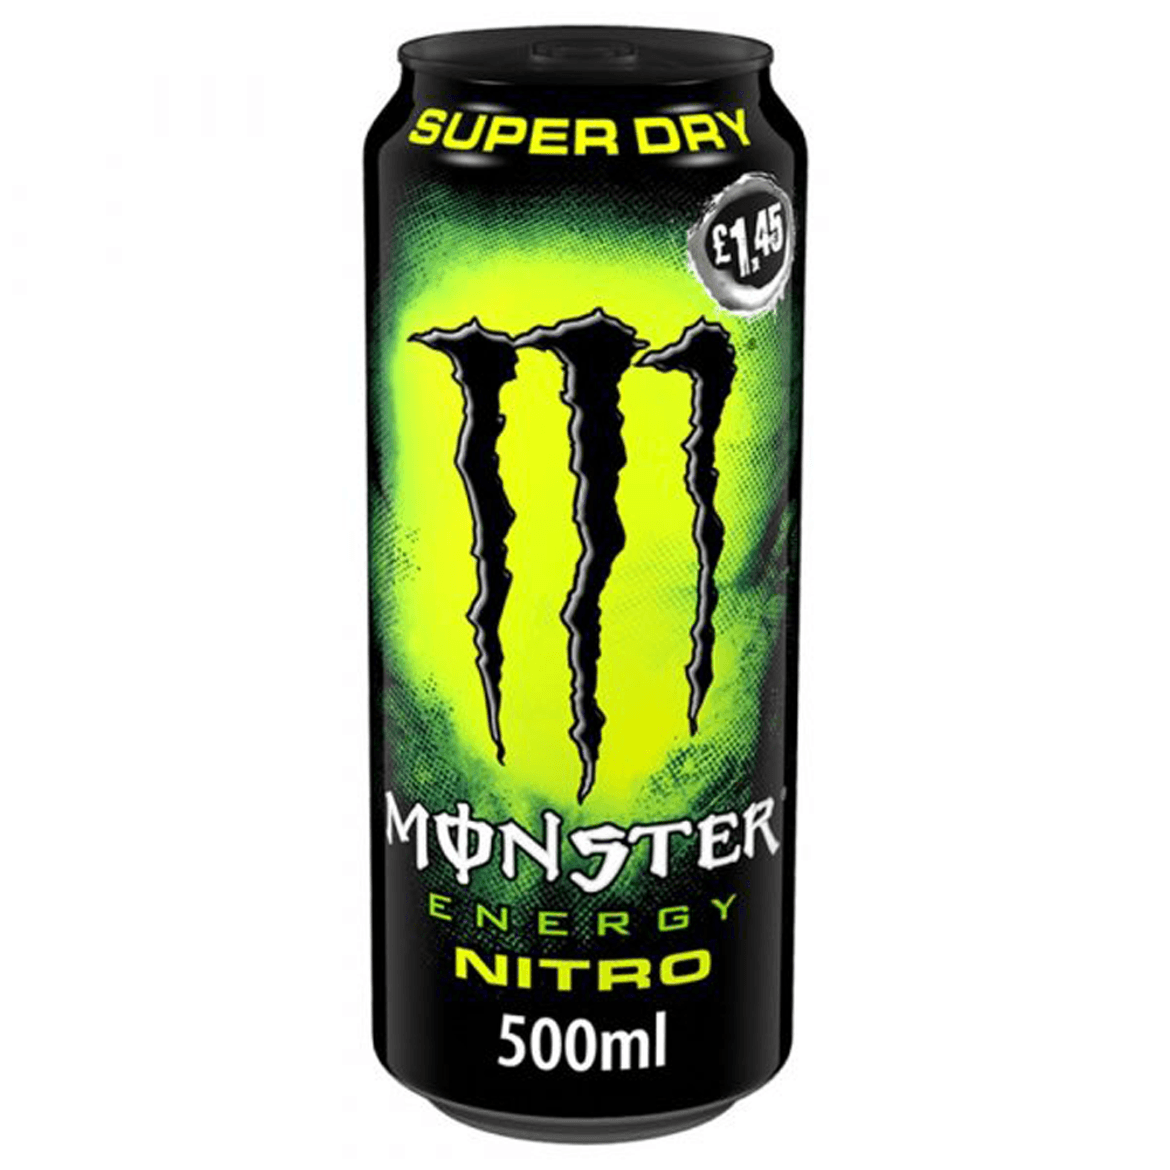 Monster energiaital nitro super dry